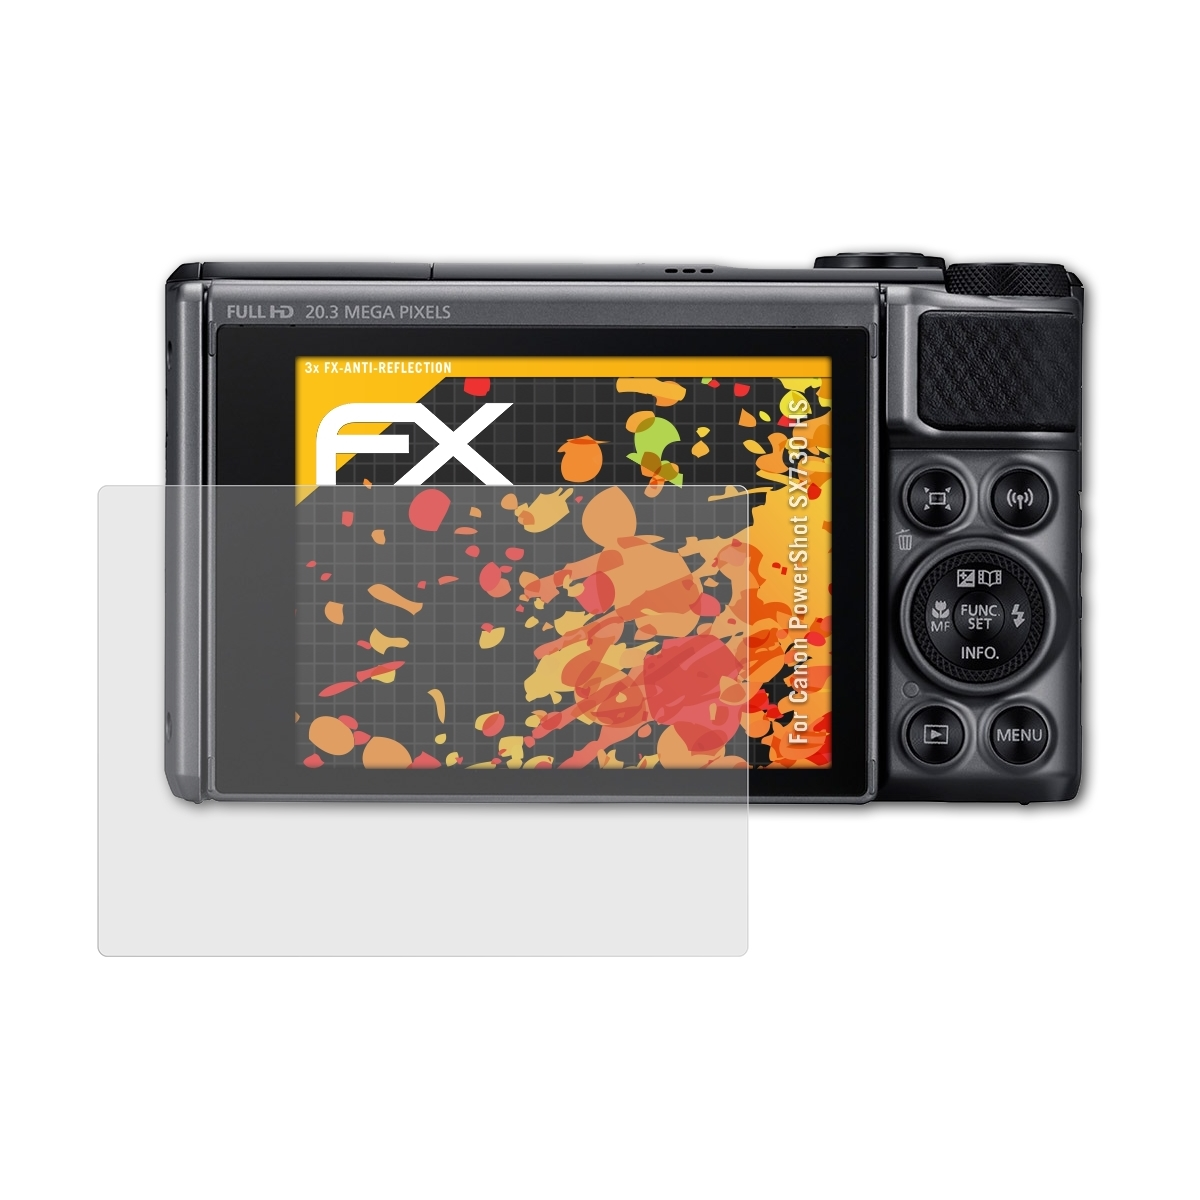 ATFOLIX 3x FX-Antireflex Displayschutz(für Canon SX730 PowerShot HS)